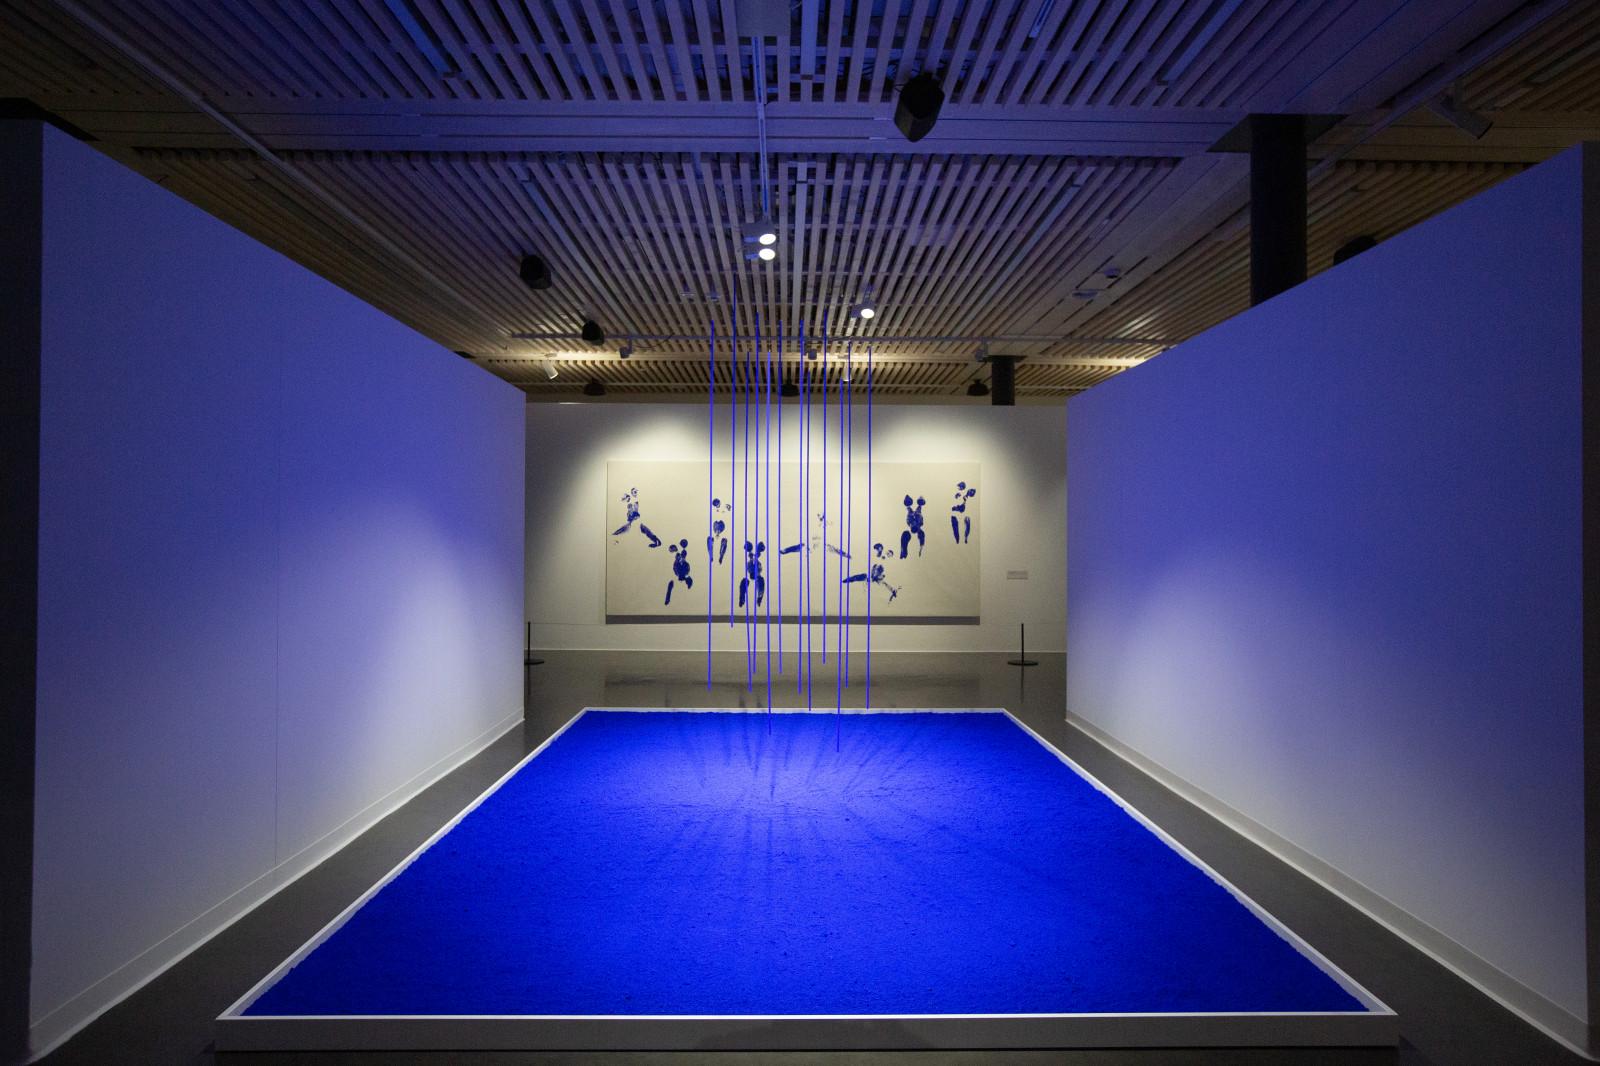 Vue de l'exposition "Yves Klein - Rêver dans le rêve des autres", Fondation Opale, Lens, Suisse, 2022